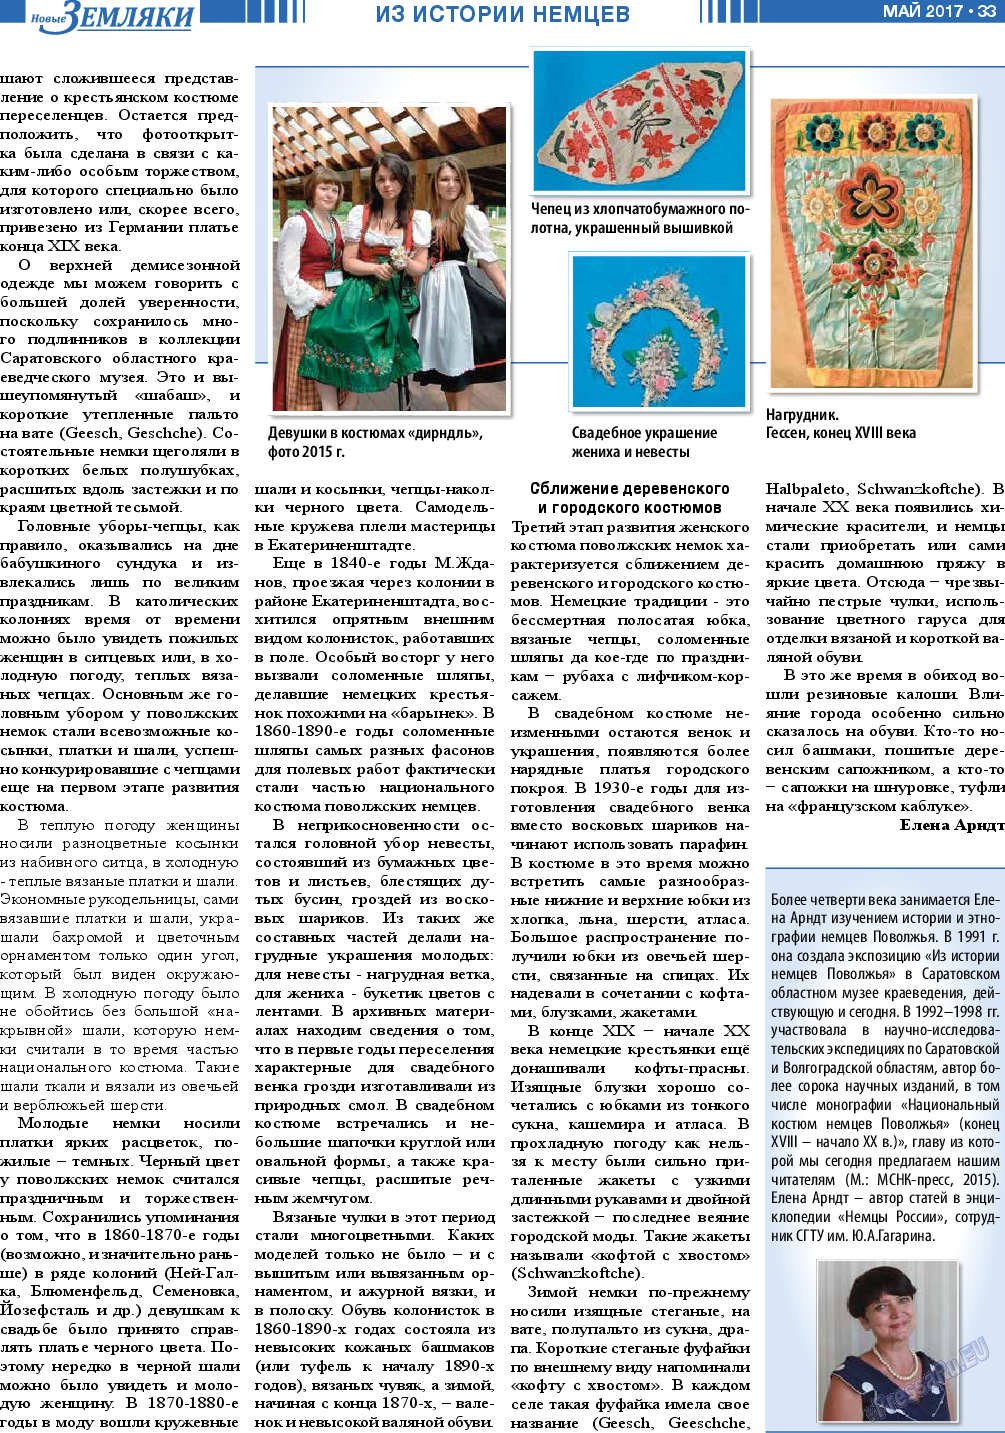 Новые Земляки, газета. 2017 №5 стр.33